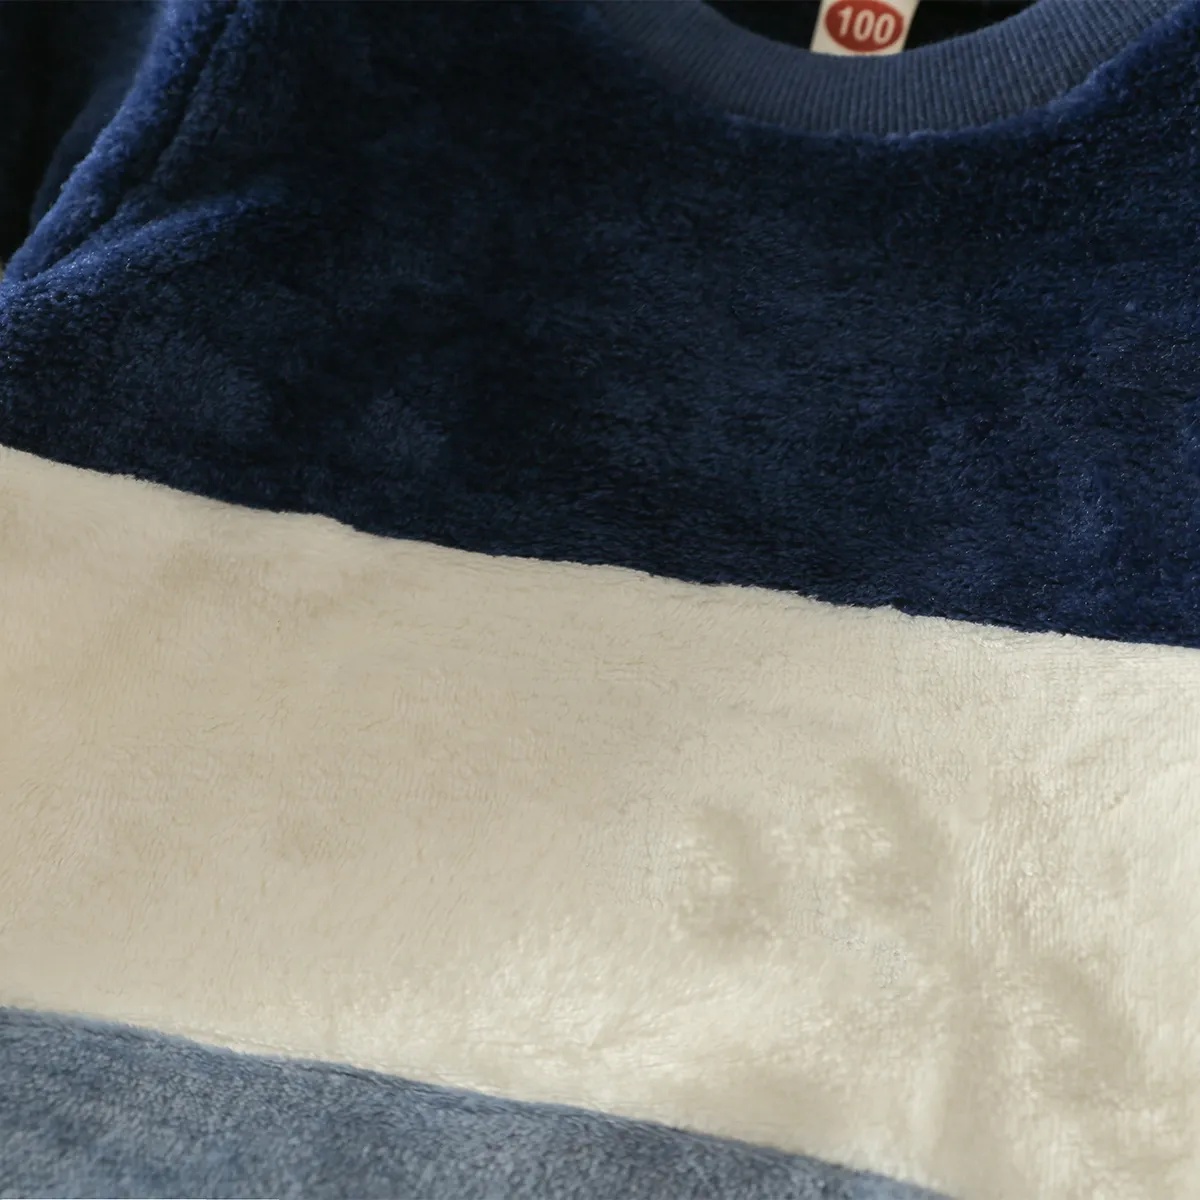 2 Stück Kleinkinder Jungen Stoffnähte Klassisch Sweatshirt-Sets tibetischblau big image 1